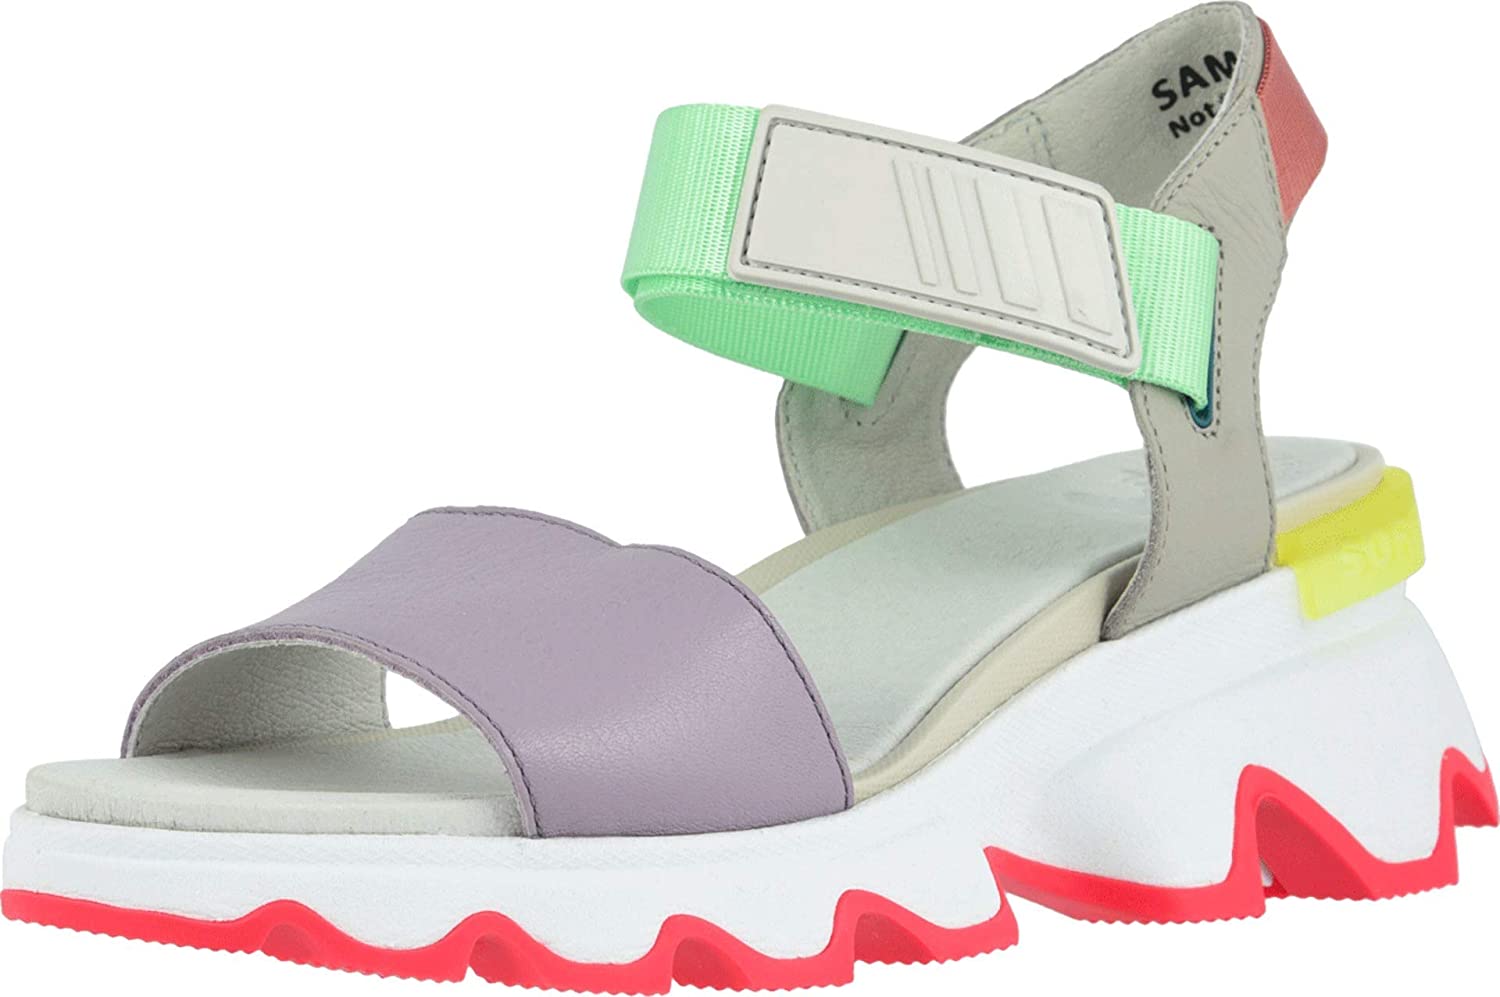 Sorel Women's Kinetic Sandals | eBay